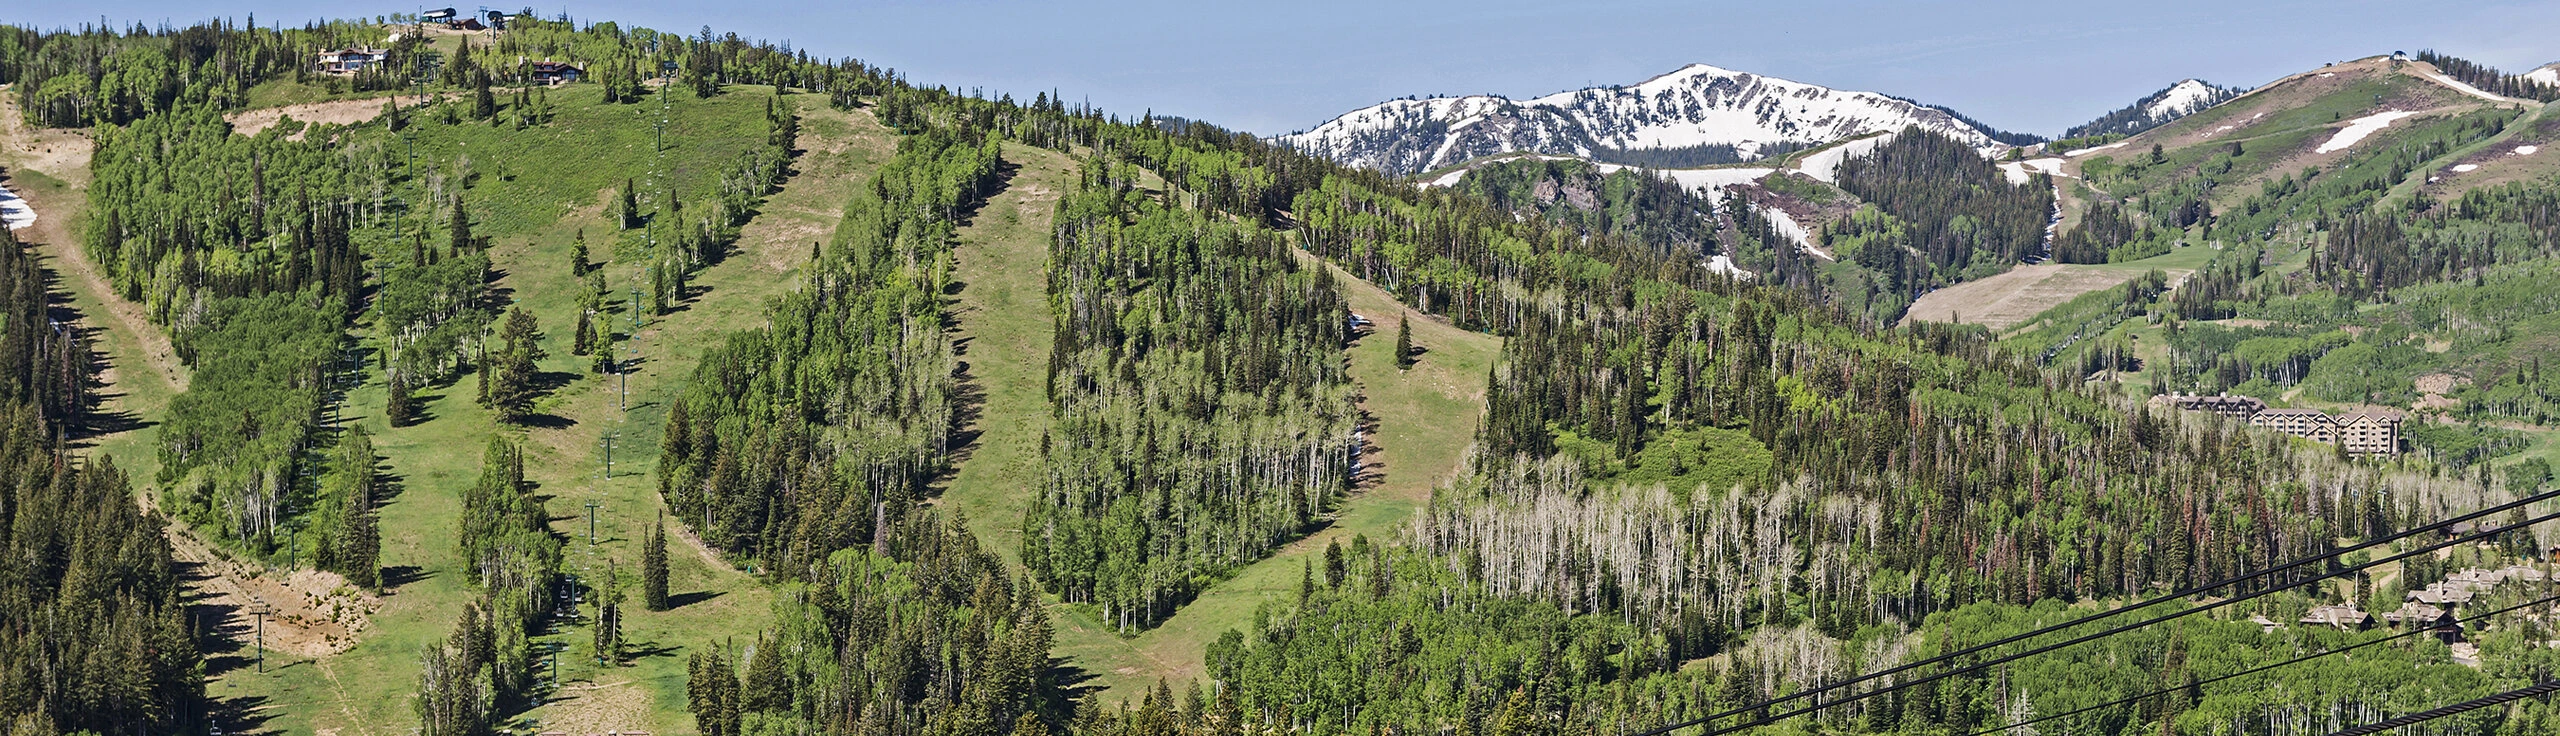 Upper Deer Valley Ski Slopes